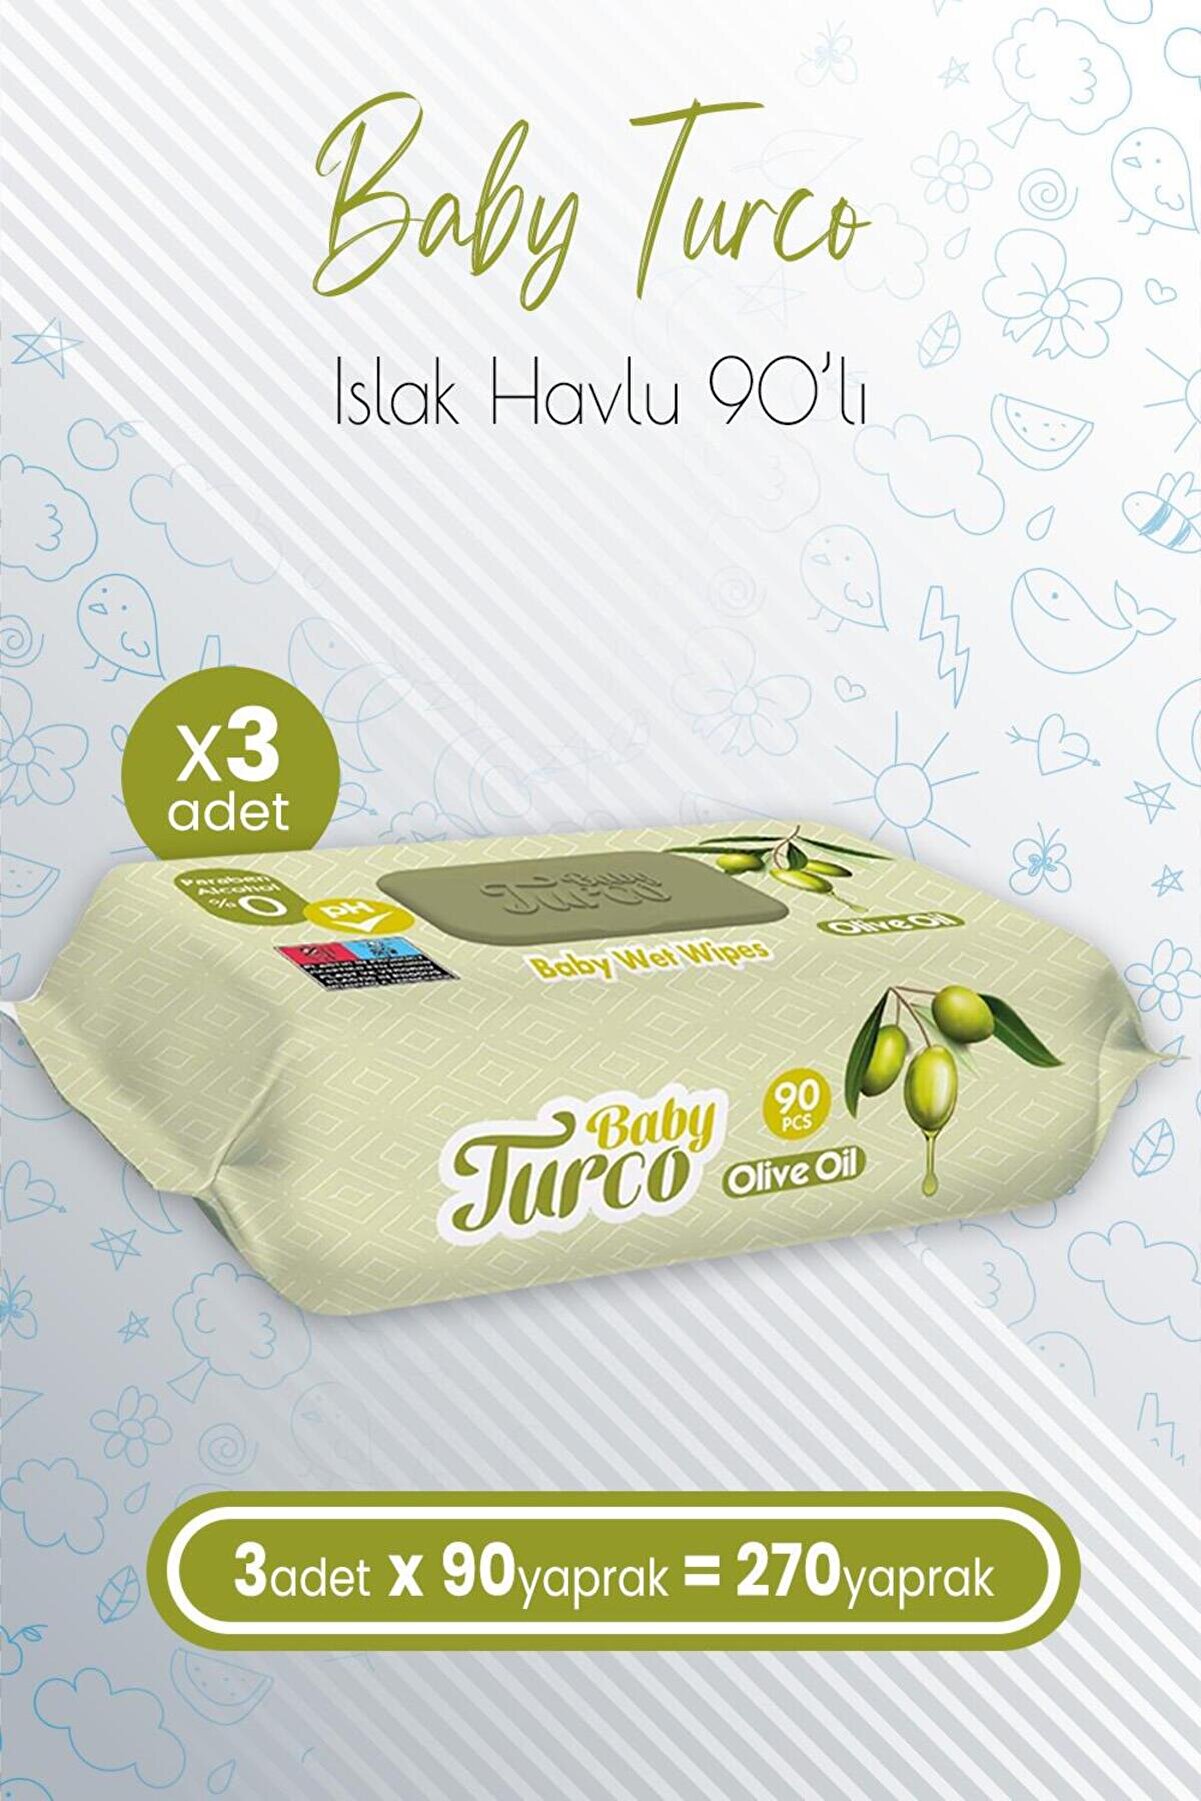 Baby Turco Bebek Islak Havlu Olive Oil 90' Lı X 3 Adet (270 YAPRAK)